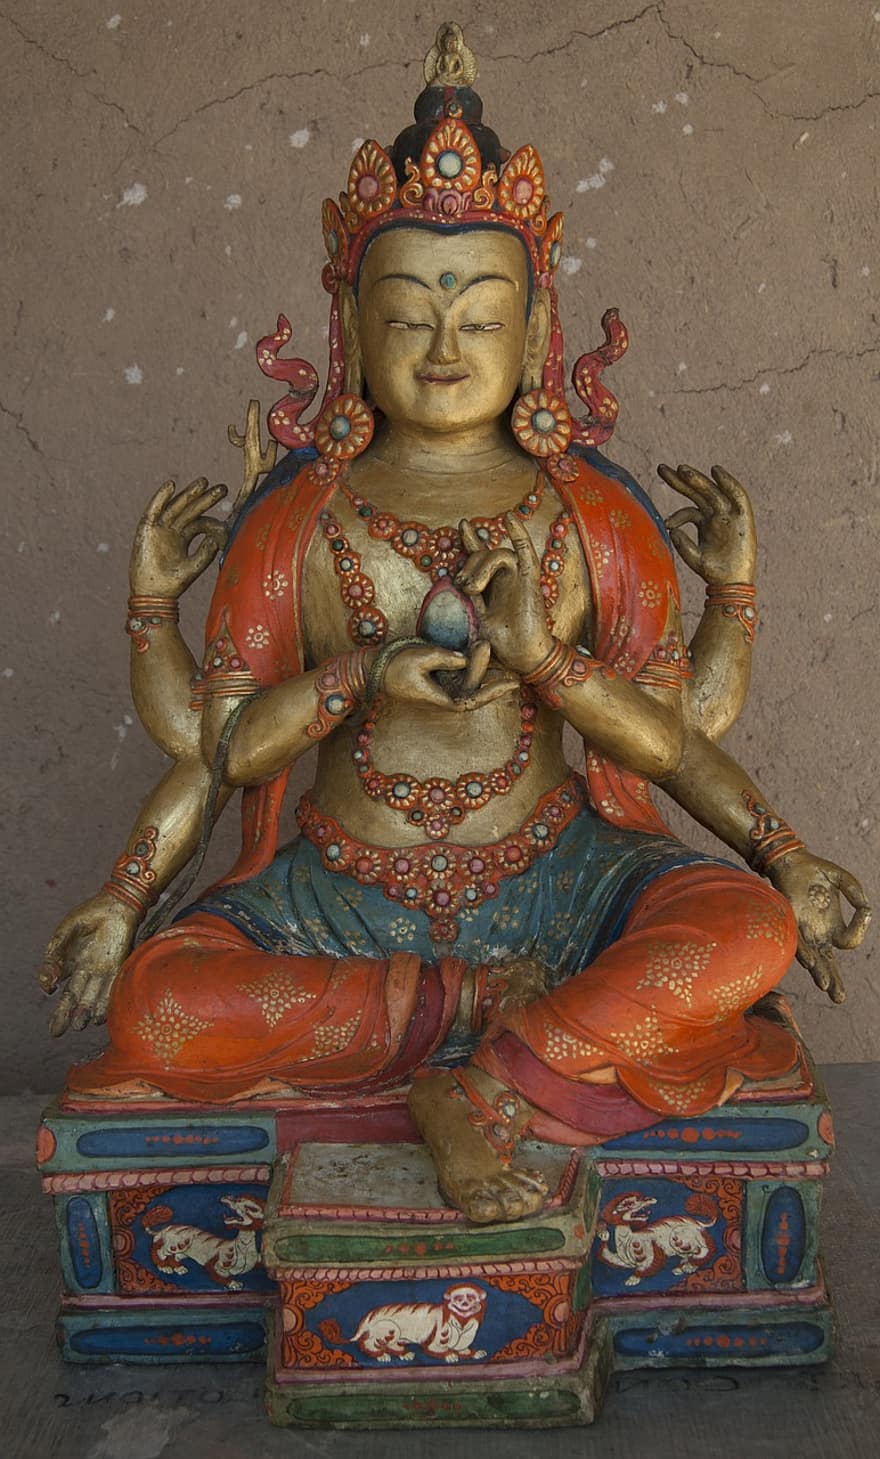 Βουδιστική Ζωγραφική, βουδισμός, βουδιστική τέχνη, γλυπτική, θρησκεία, πολιτισμών, άγαλμα, πνευματικότητα, ινδουϊσμός, θεός, διάσημο μέρος